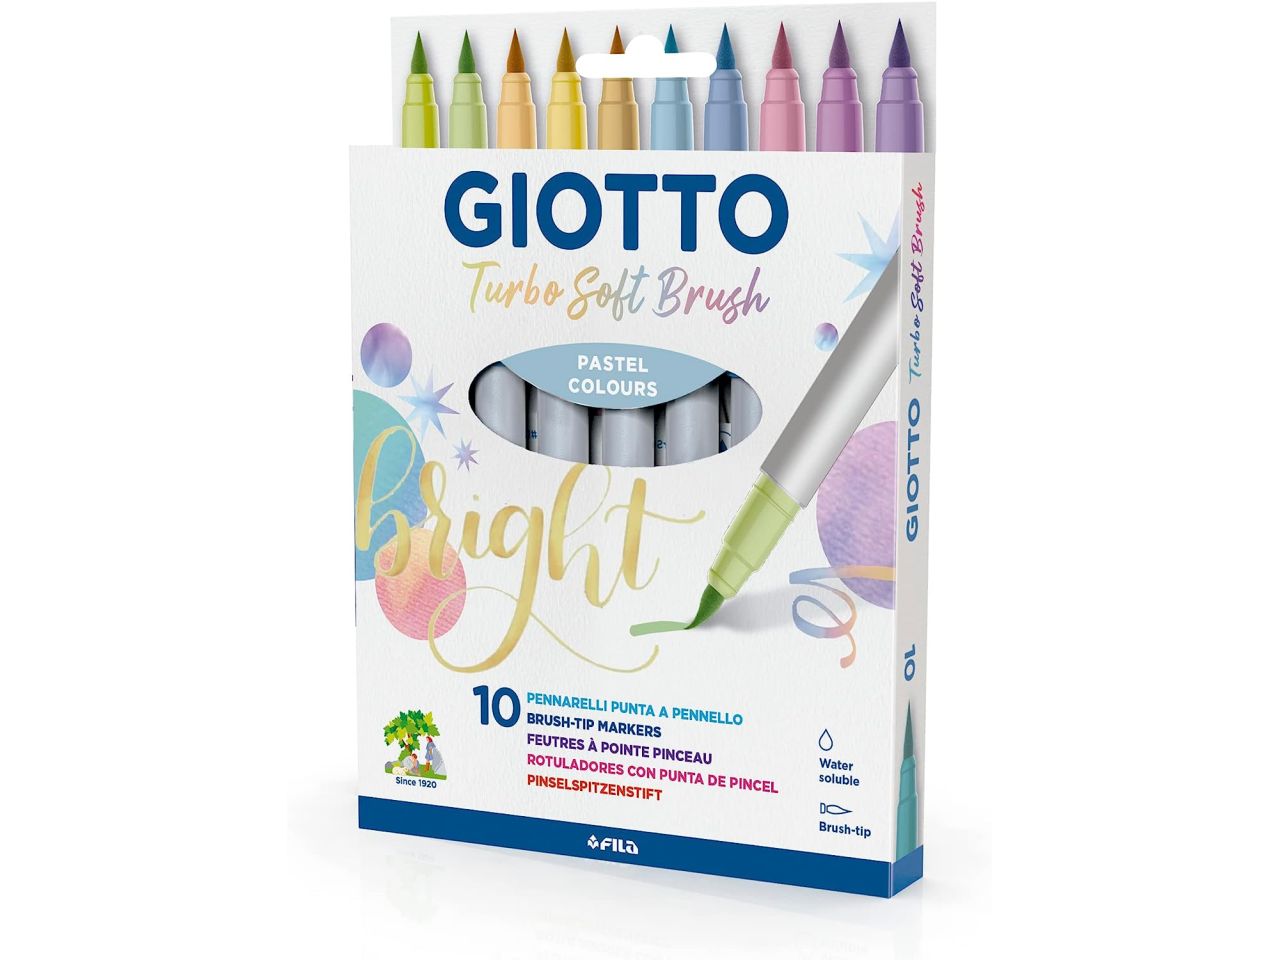 Giotto Turbo Soft Brush, Pennarelli con punta a pennello, punta solubile  all'acqua, colori pastello assortiti, 10 pezzi